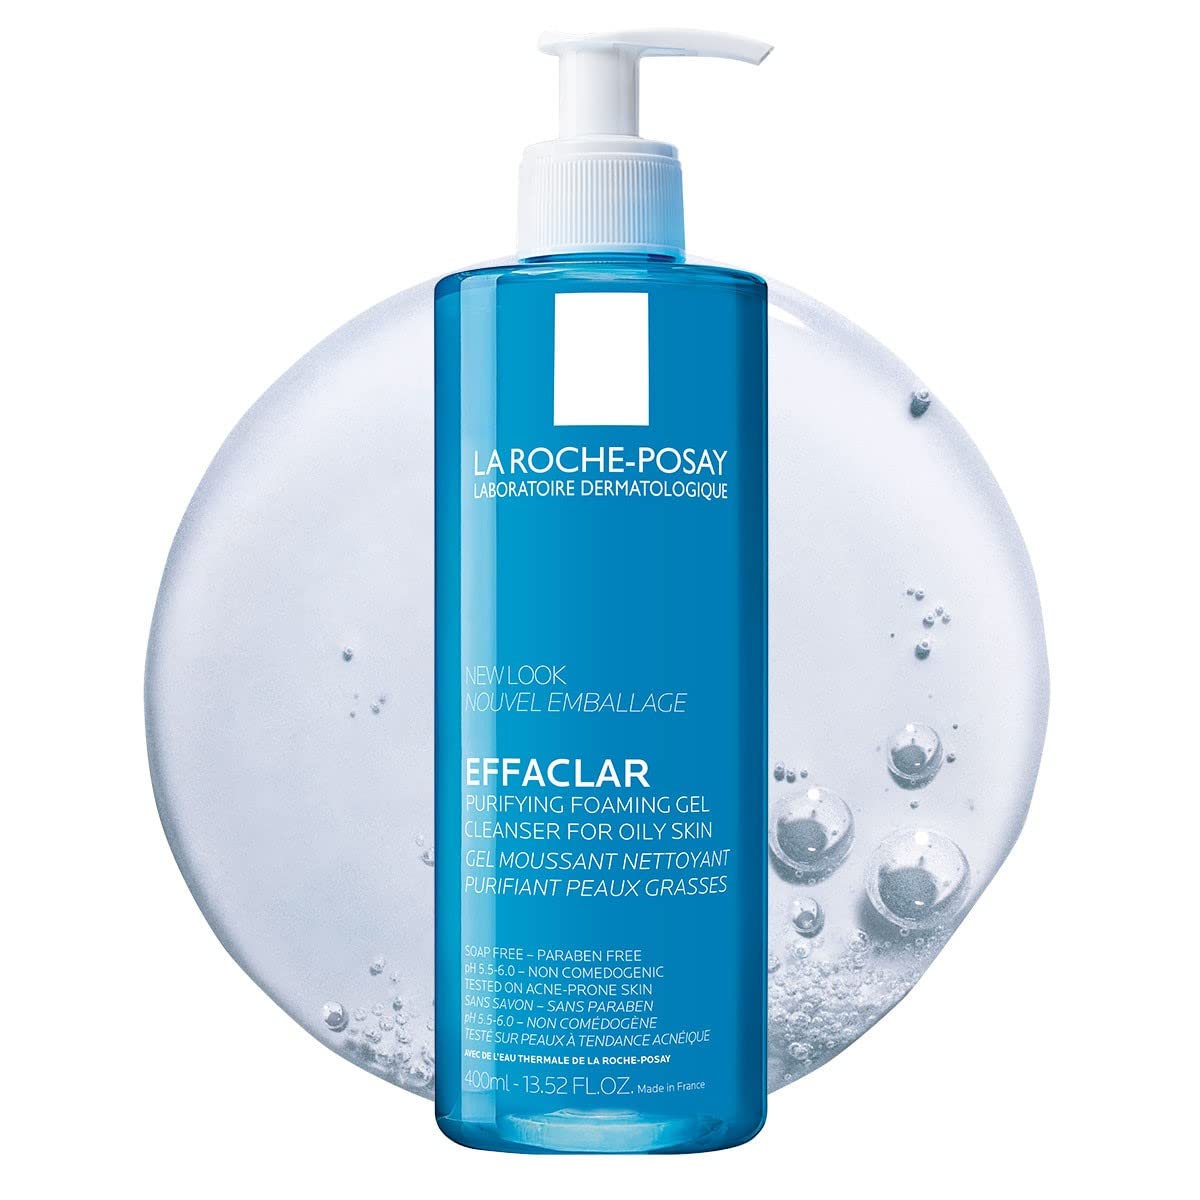 Cleanser: La Roche-Posay Effaclar Purifying Foaming Gel